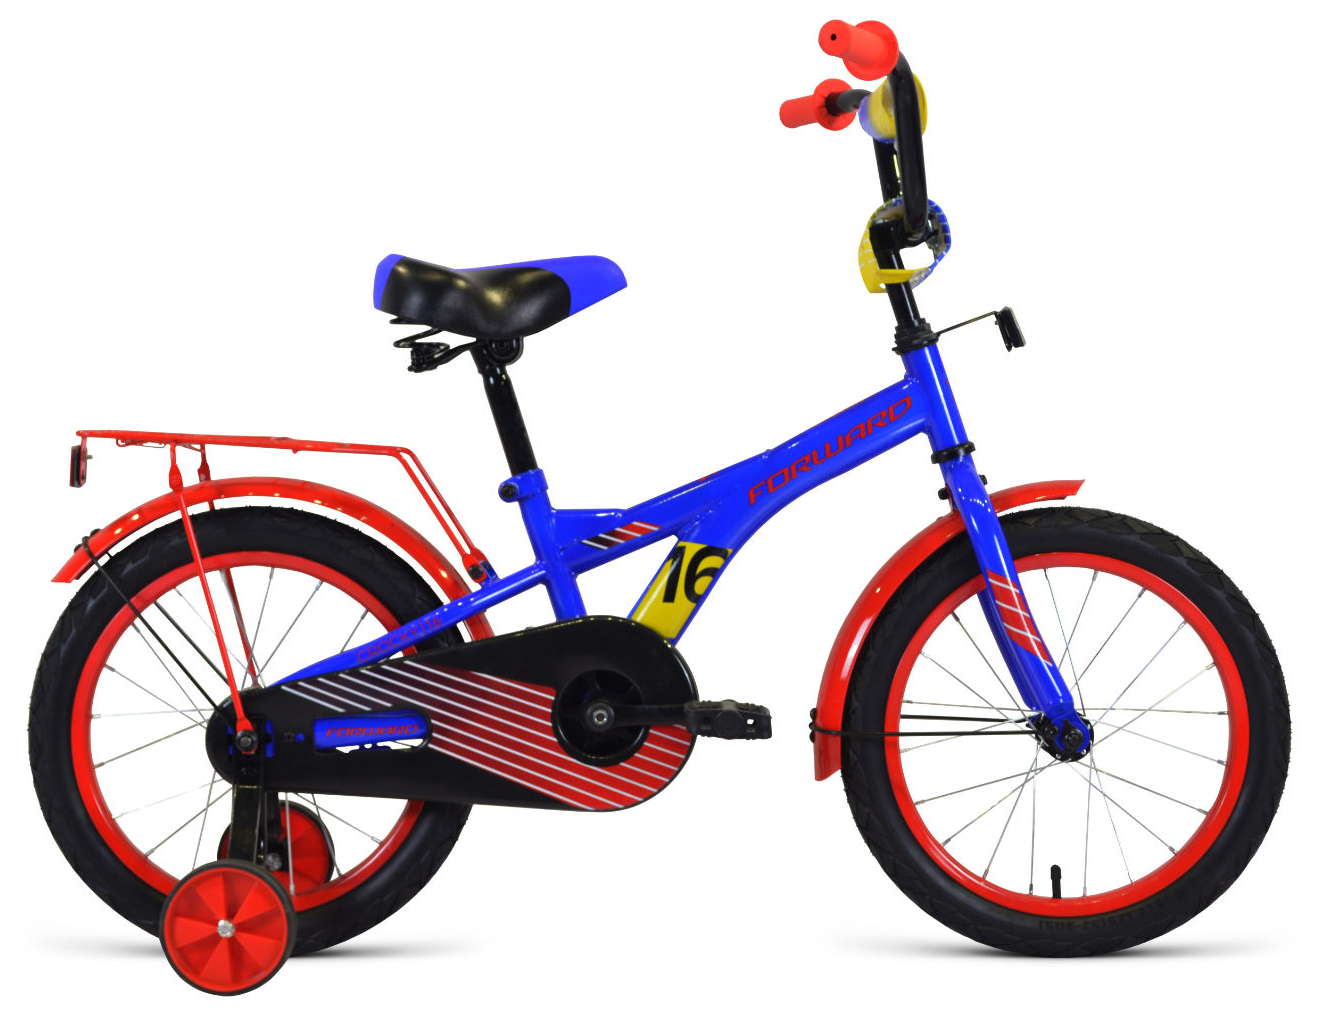  Отзывы о Детском велосипеде Forward Crocky 16 2020